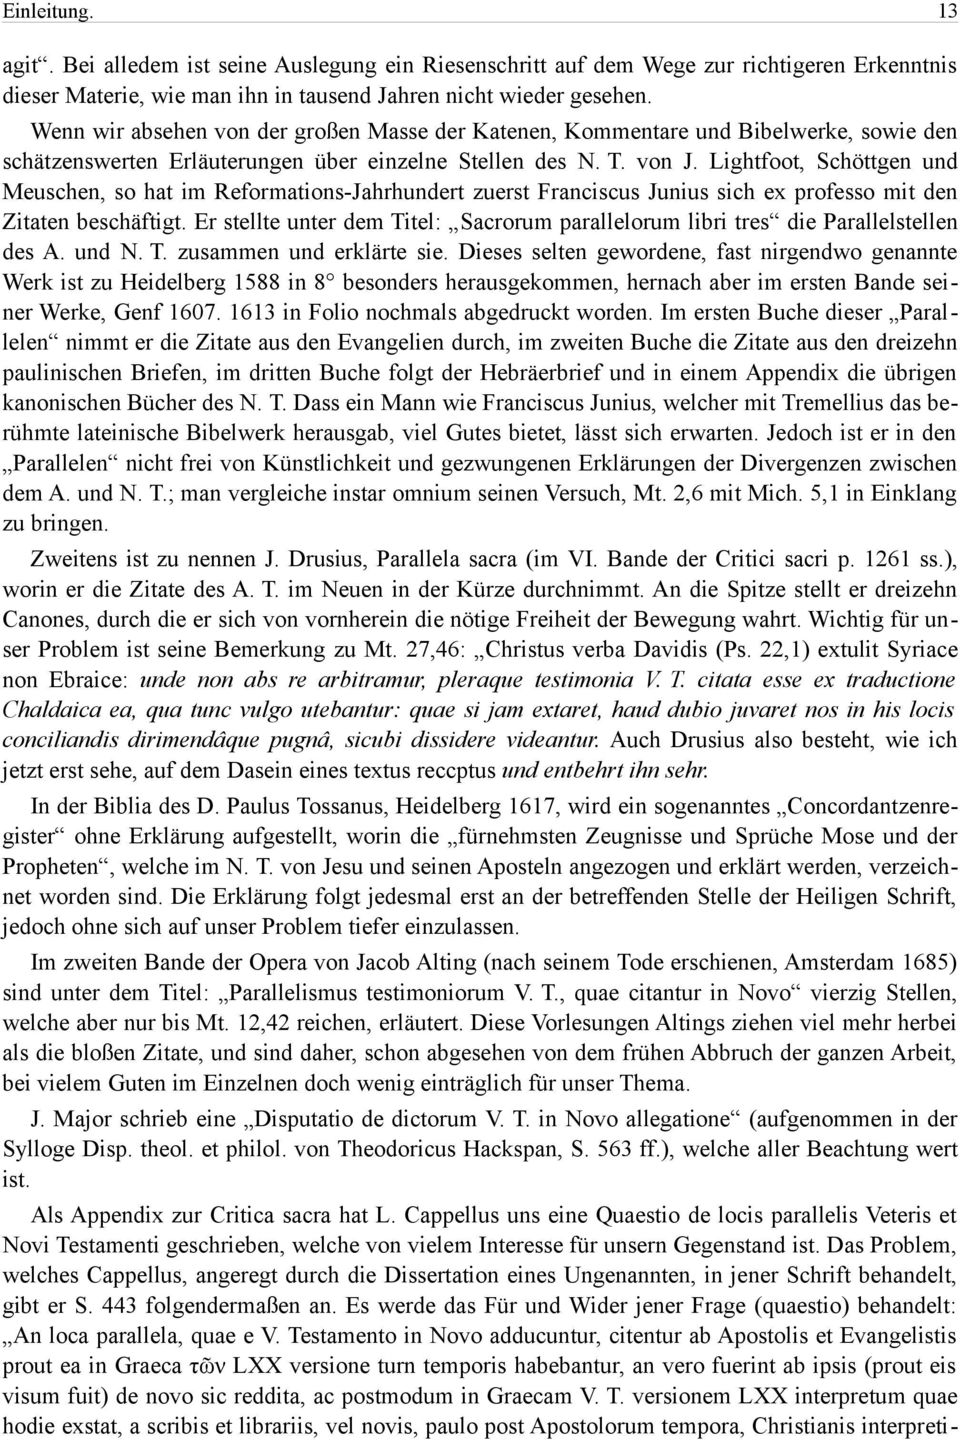 Lightfoot, Schöttgen und Meuschen, so hat im Reformations-Jahrhundert zuerst Franciscus Junius sich ex professo mit den Zitaten beschäftigt.